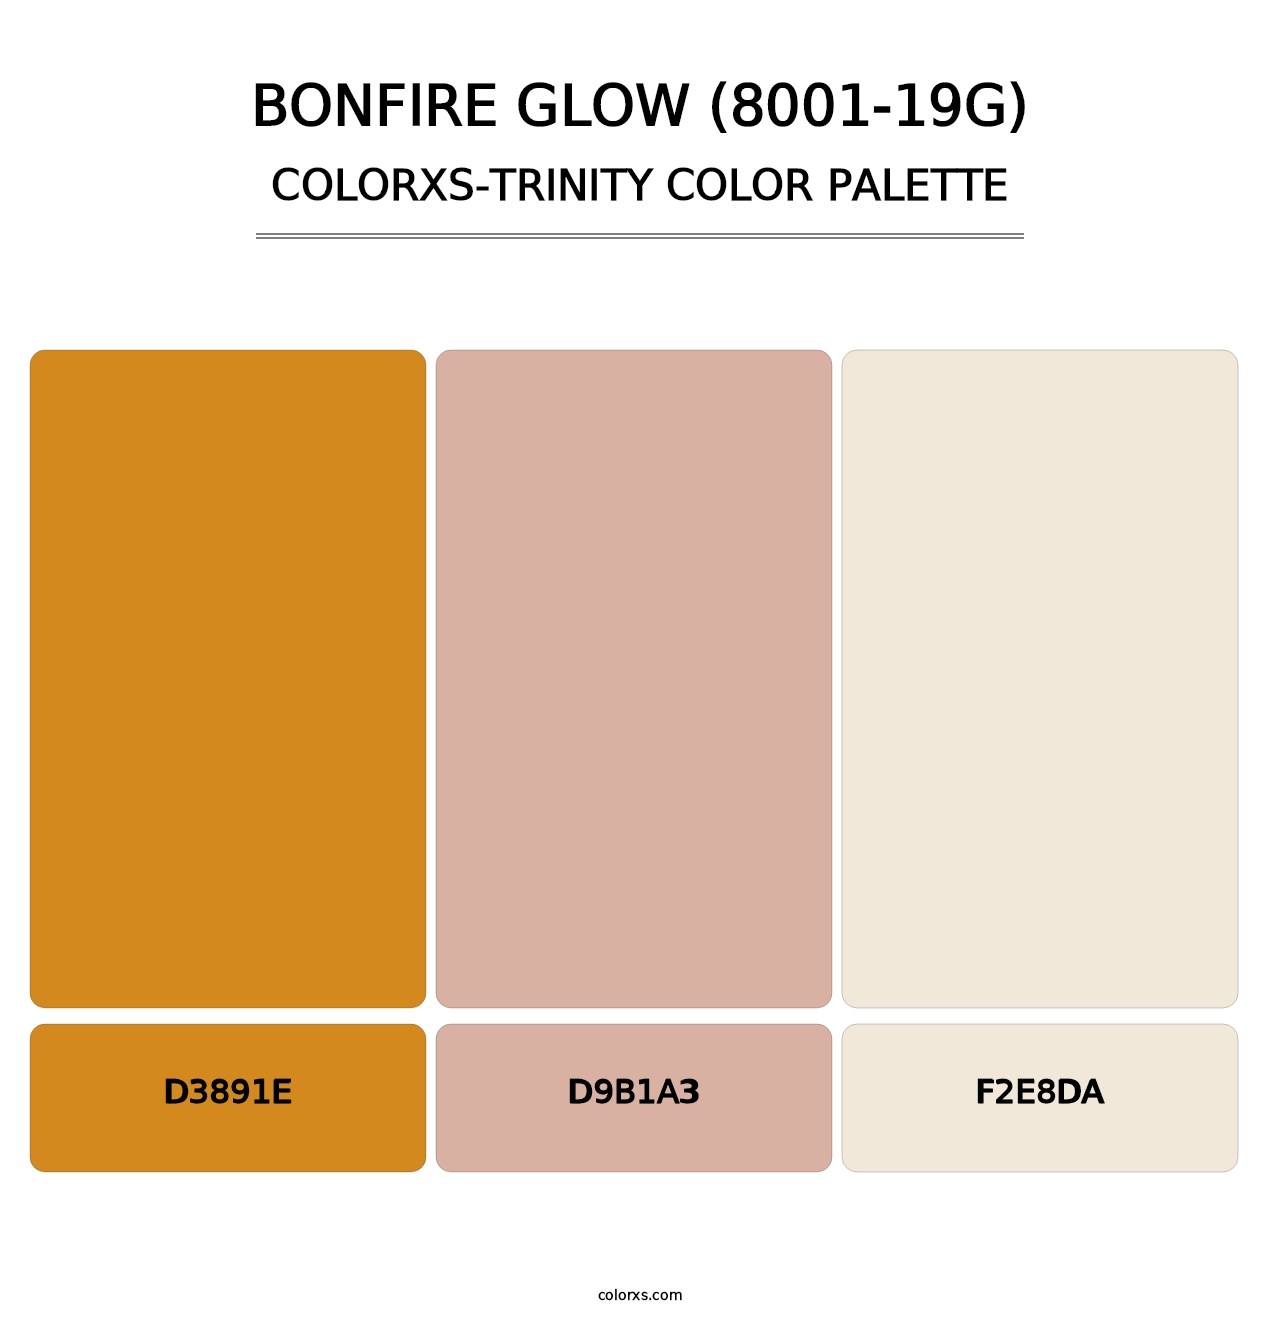 Bonfire Glow (8001-19G) - Colorxs Trinity Palette